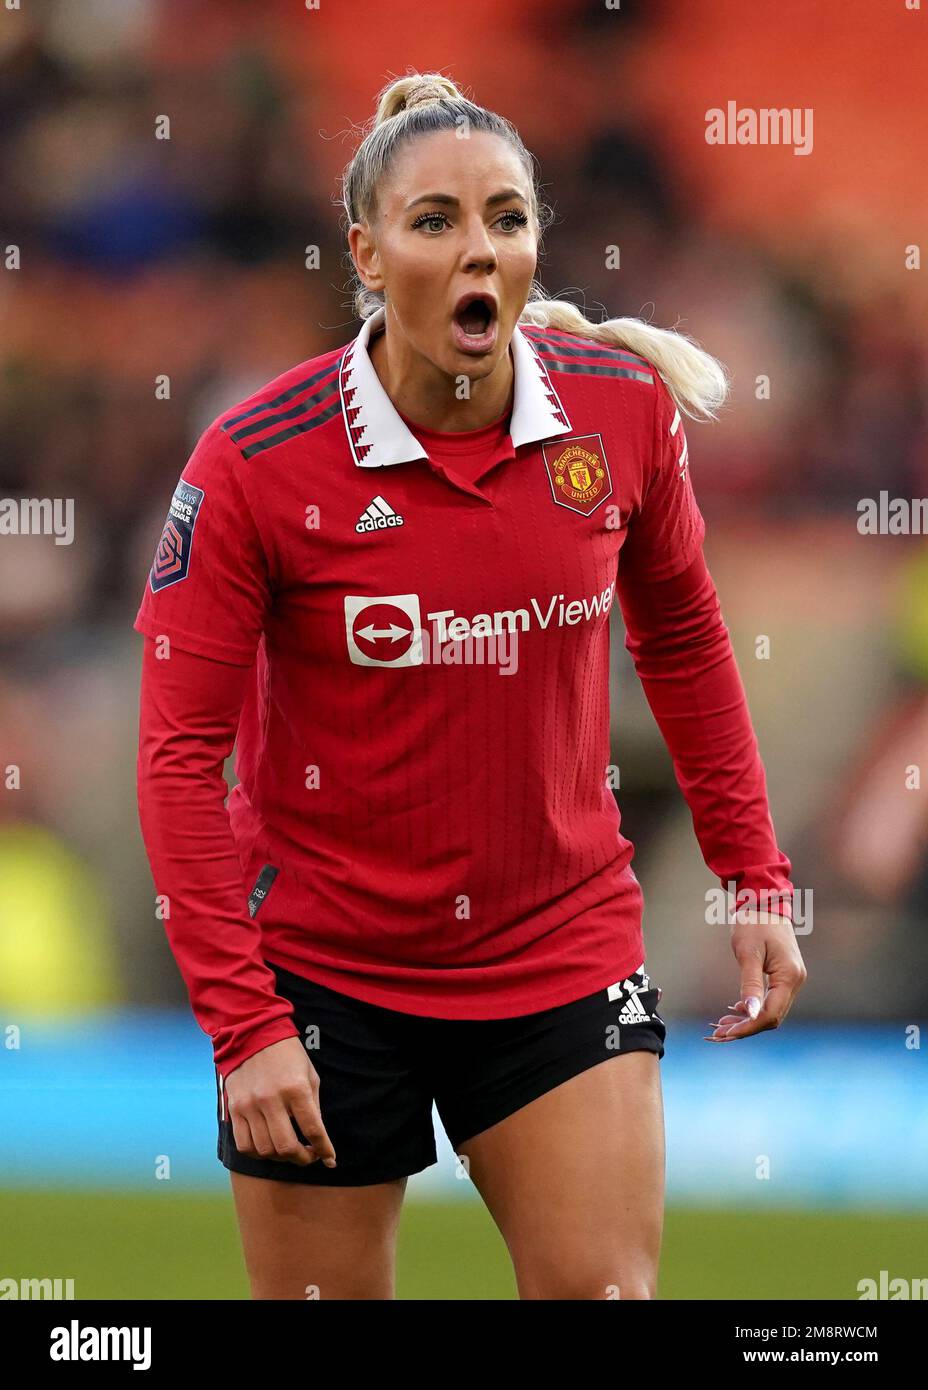 Adriana León, del Manchester United, reacciona durante el partido de la Superliga Femenina Barclays en Leigh Sports Village, Leigh. Fecha de la fotografía: Domingo 15 de enero de 2023. Foto de stock